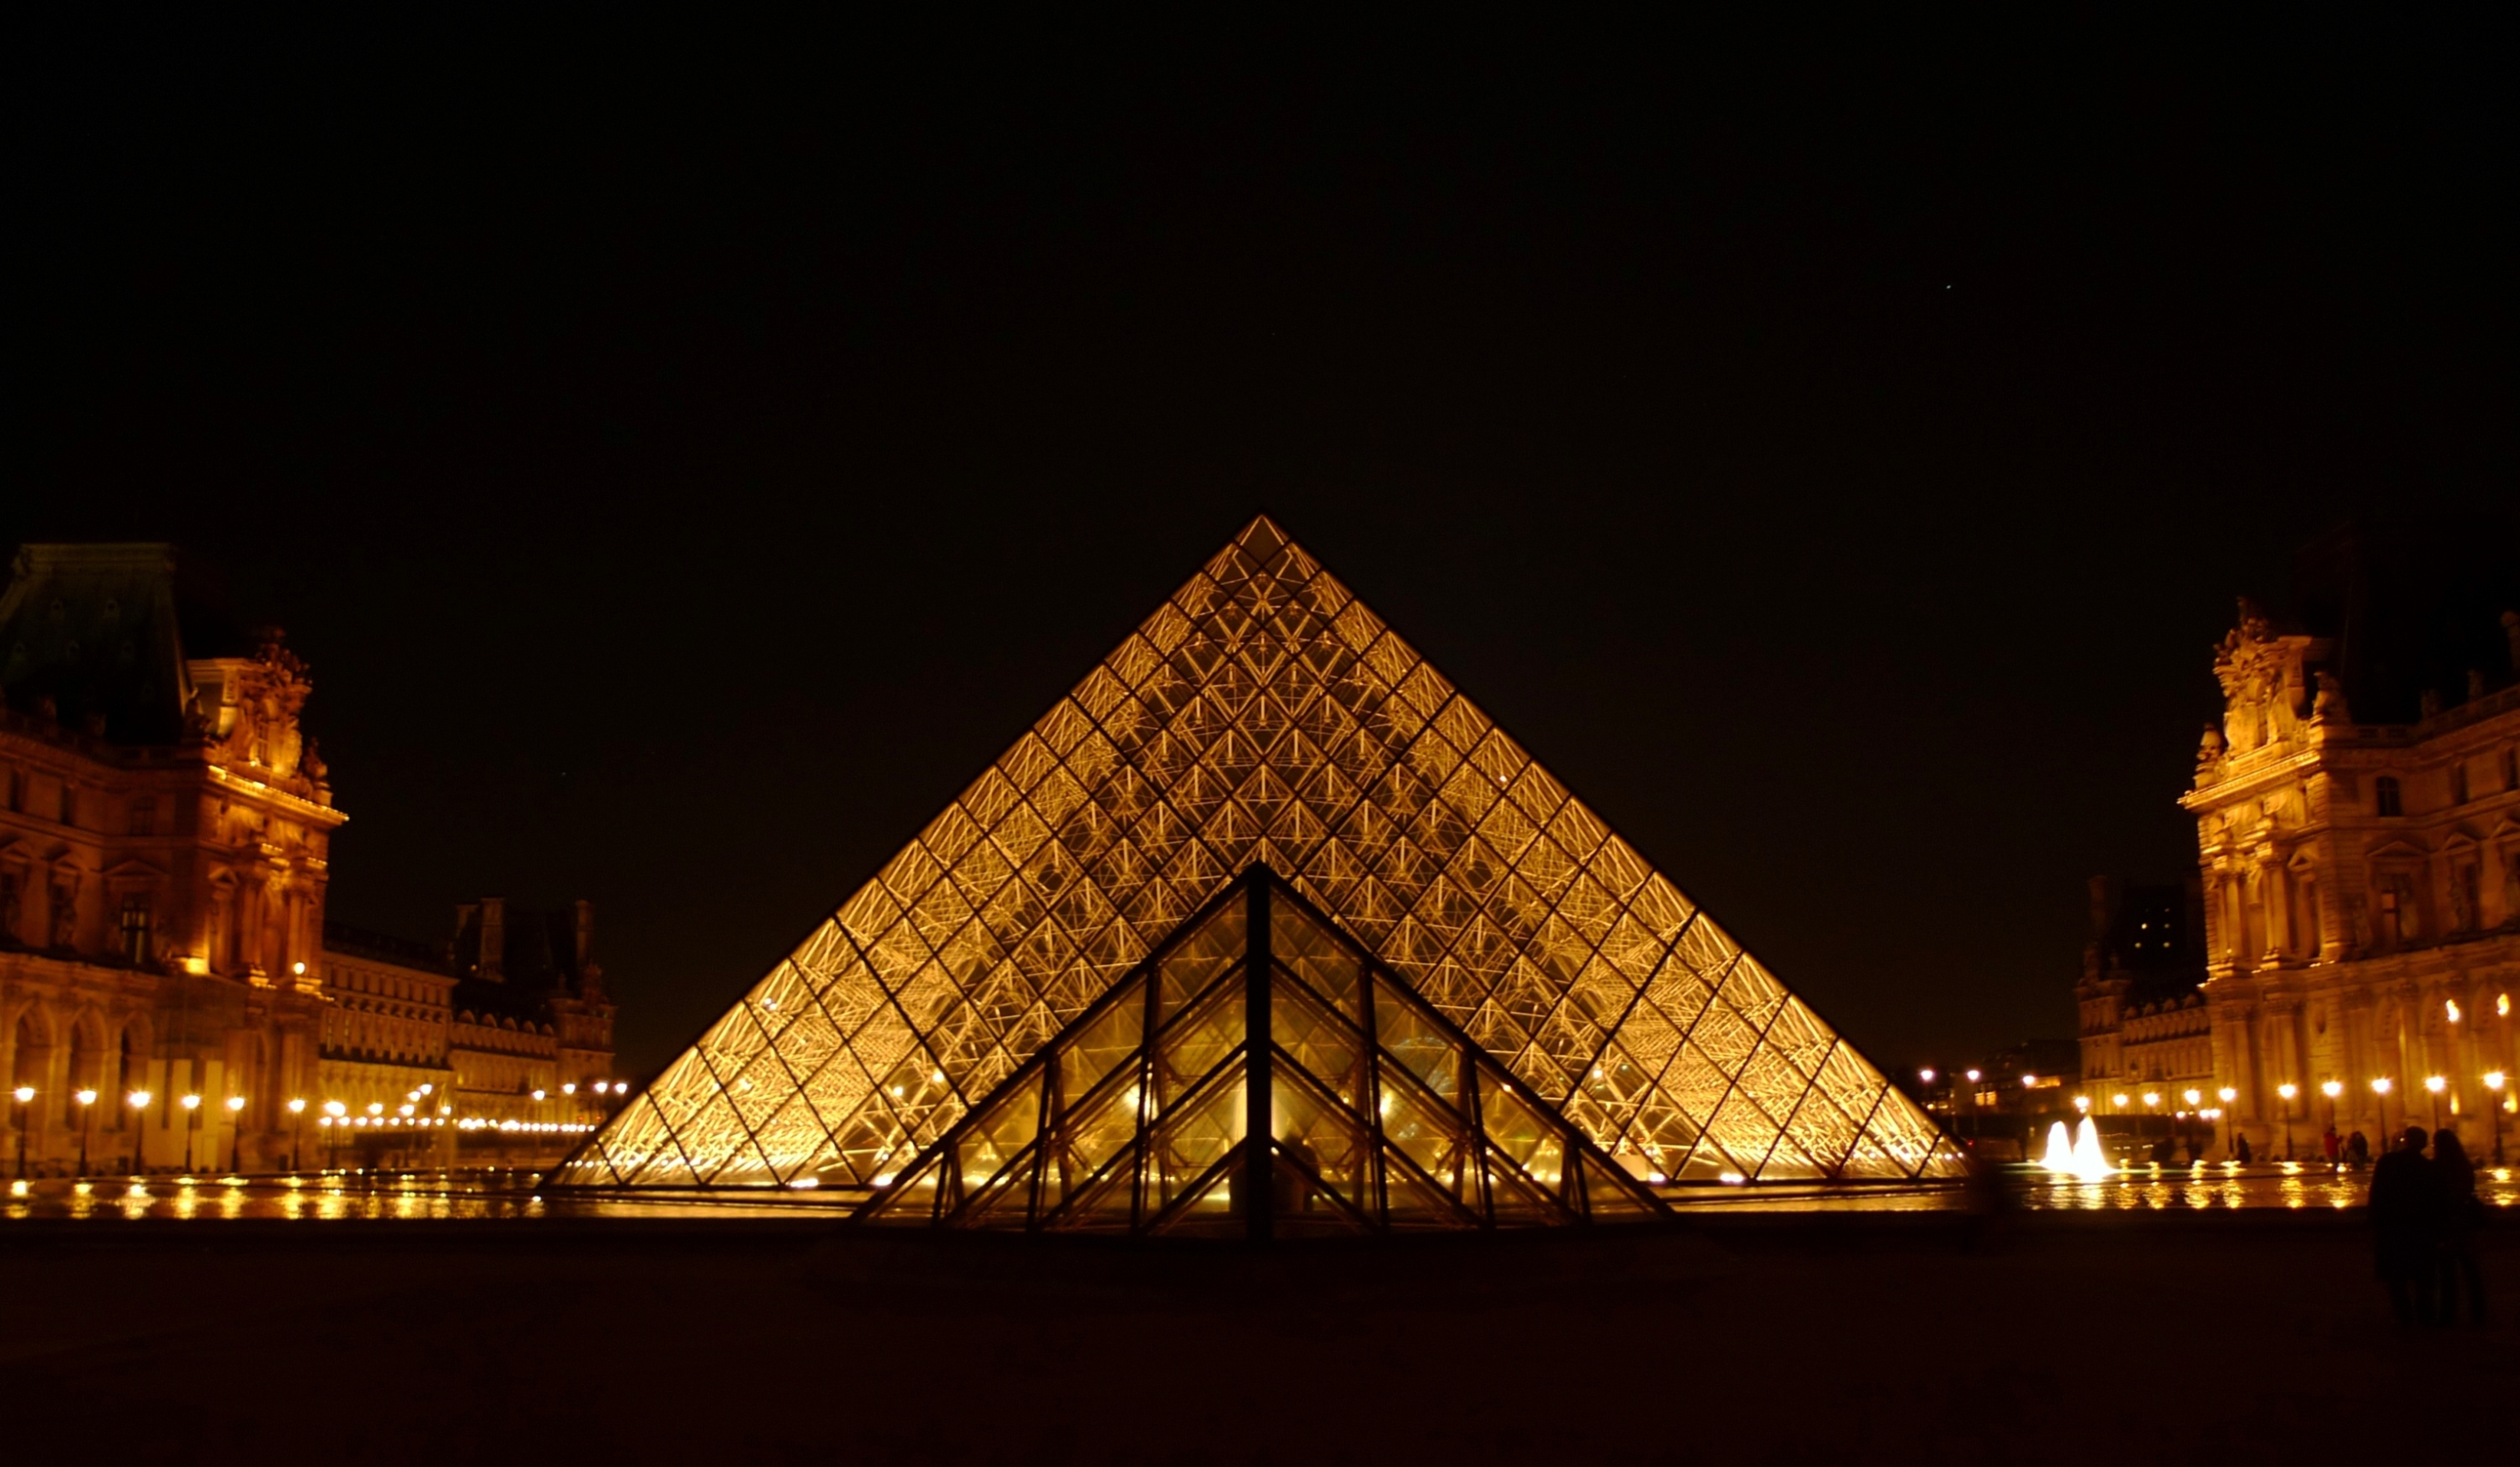 法国卢浮宫的玻璃金字塔_法国卢浮宫玻璃金字塔_卢浮宫玻璃金字塔英文名